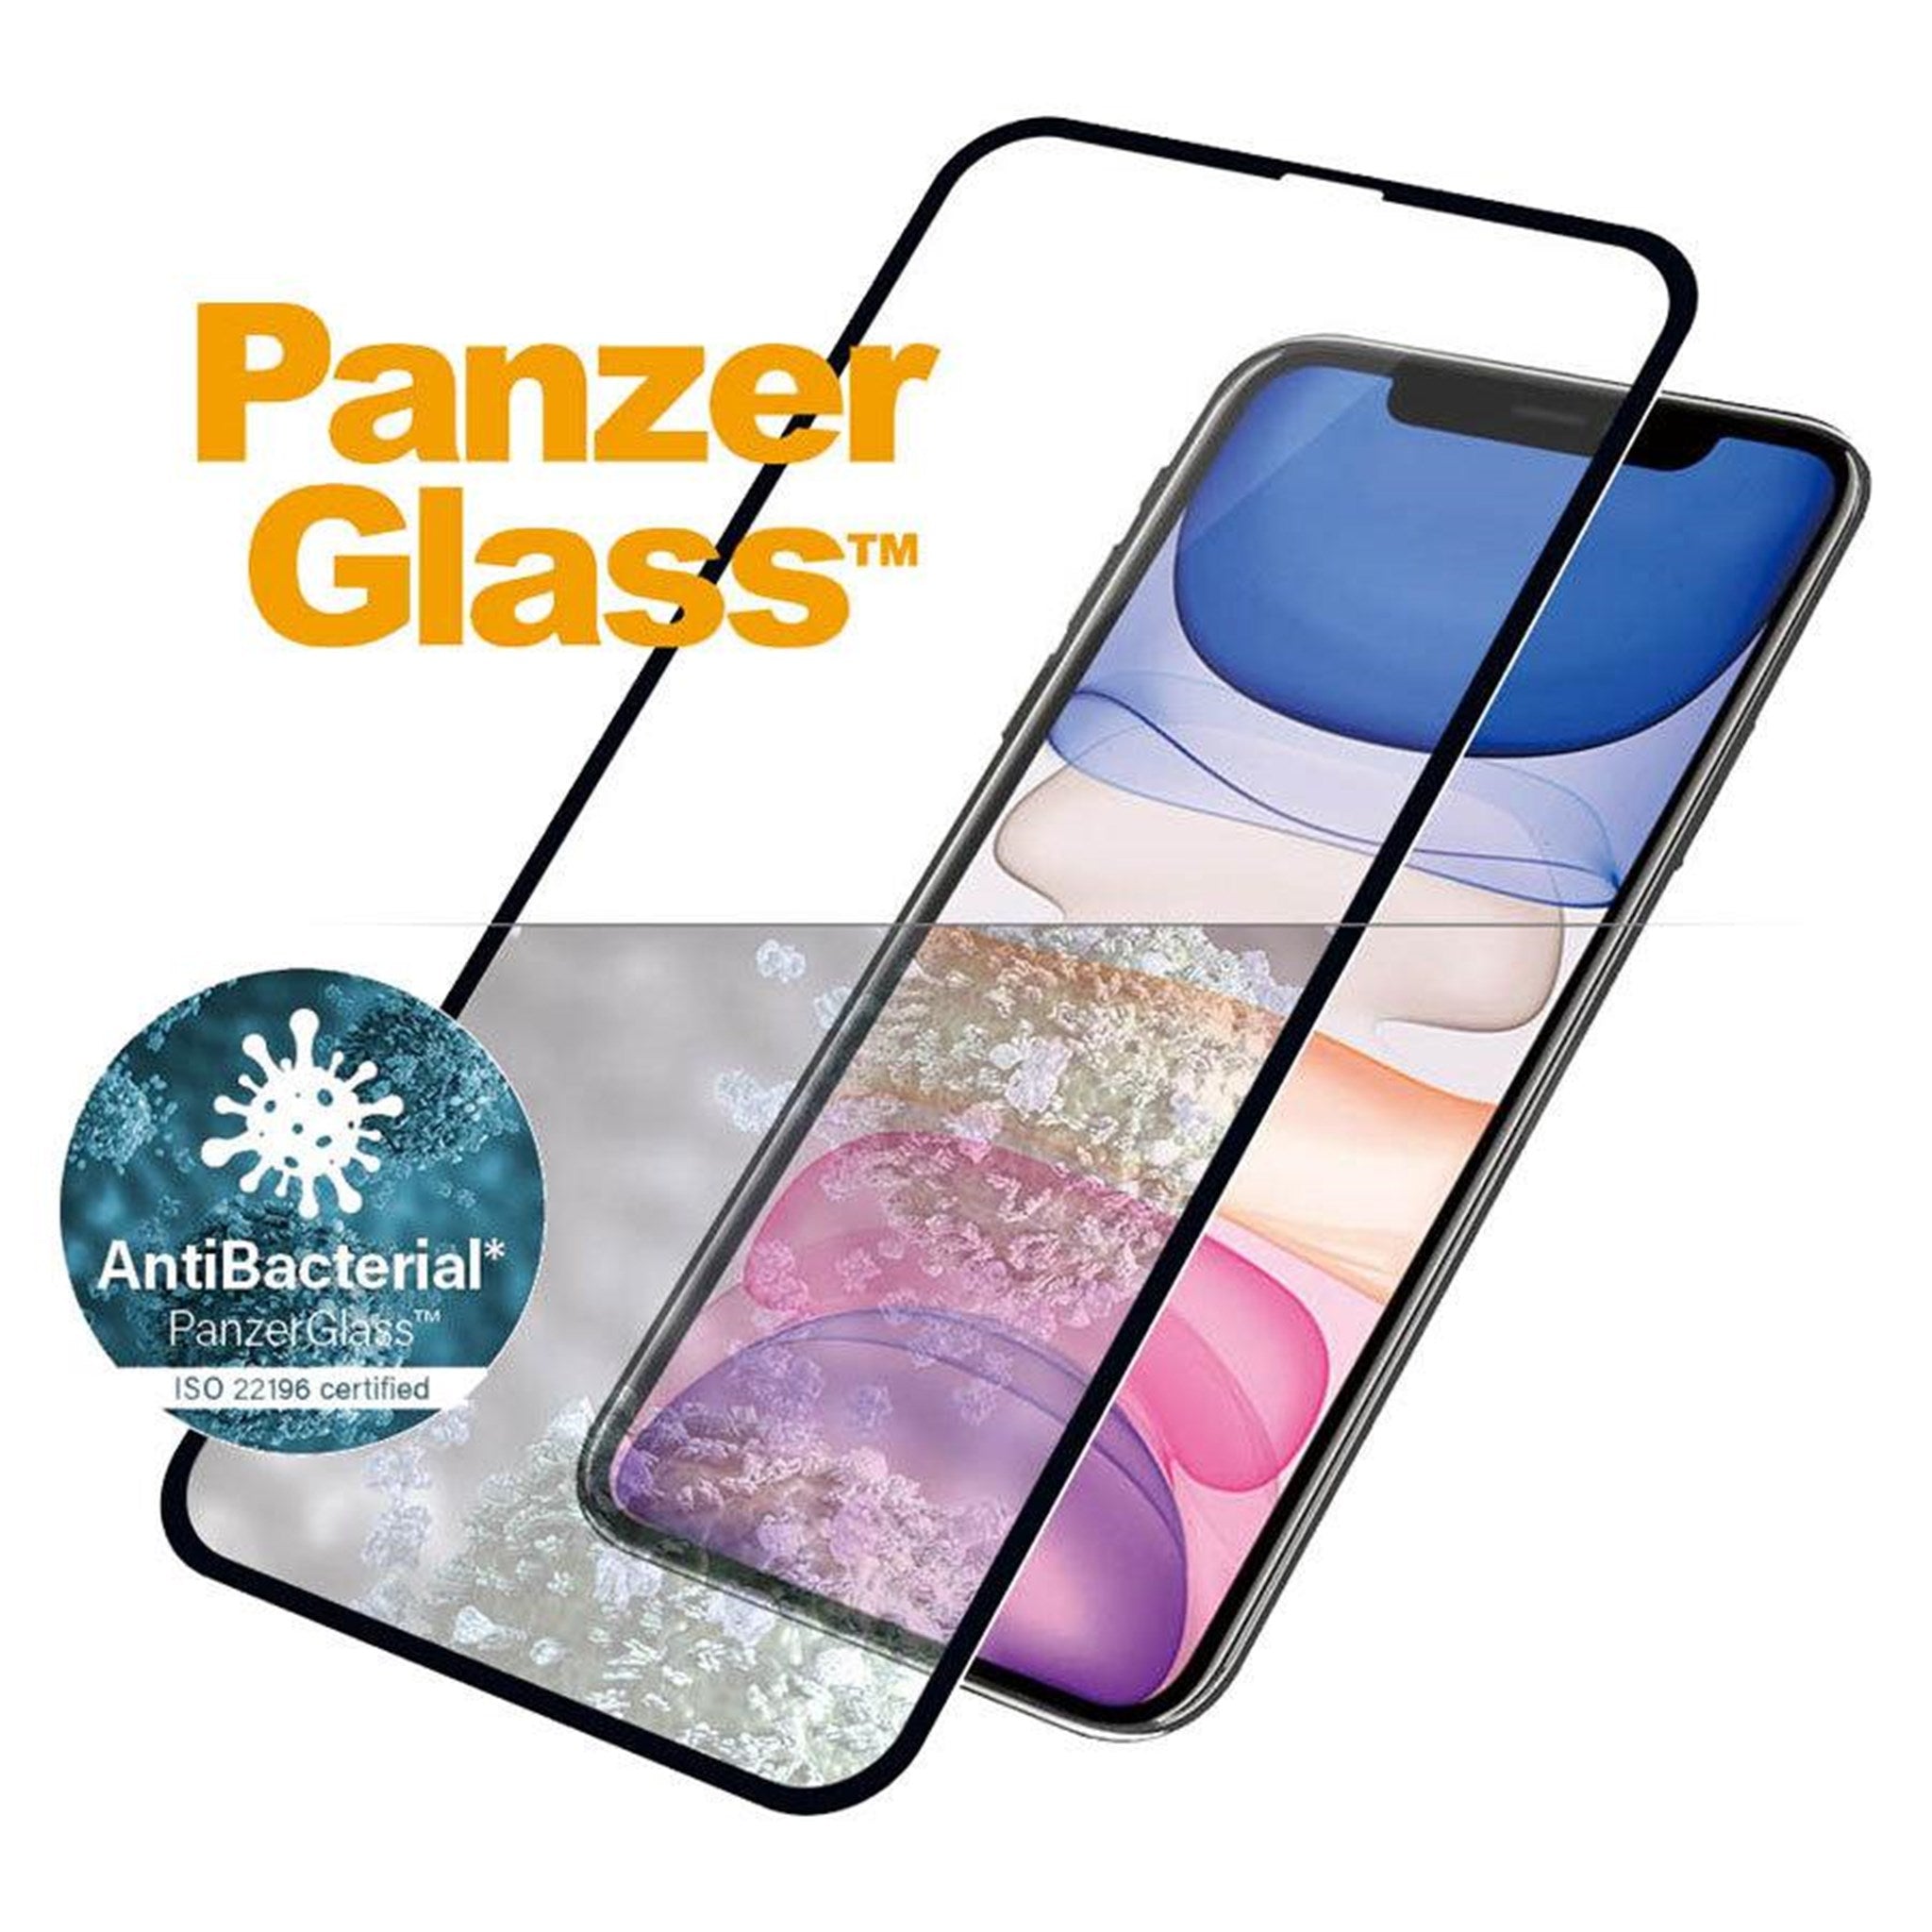 PNZ65228_PanzerGlass-iPhone-XR-11-AntiBacterial-Skaermbeskyttelse-Sort-Kant_02.jpg